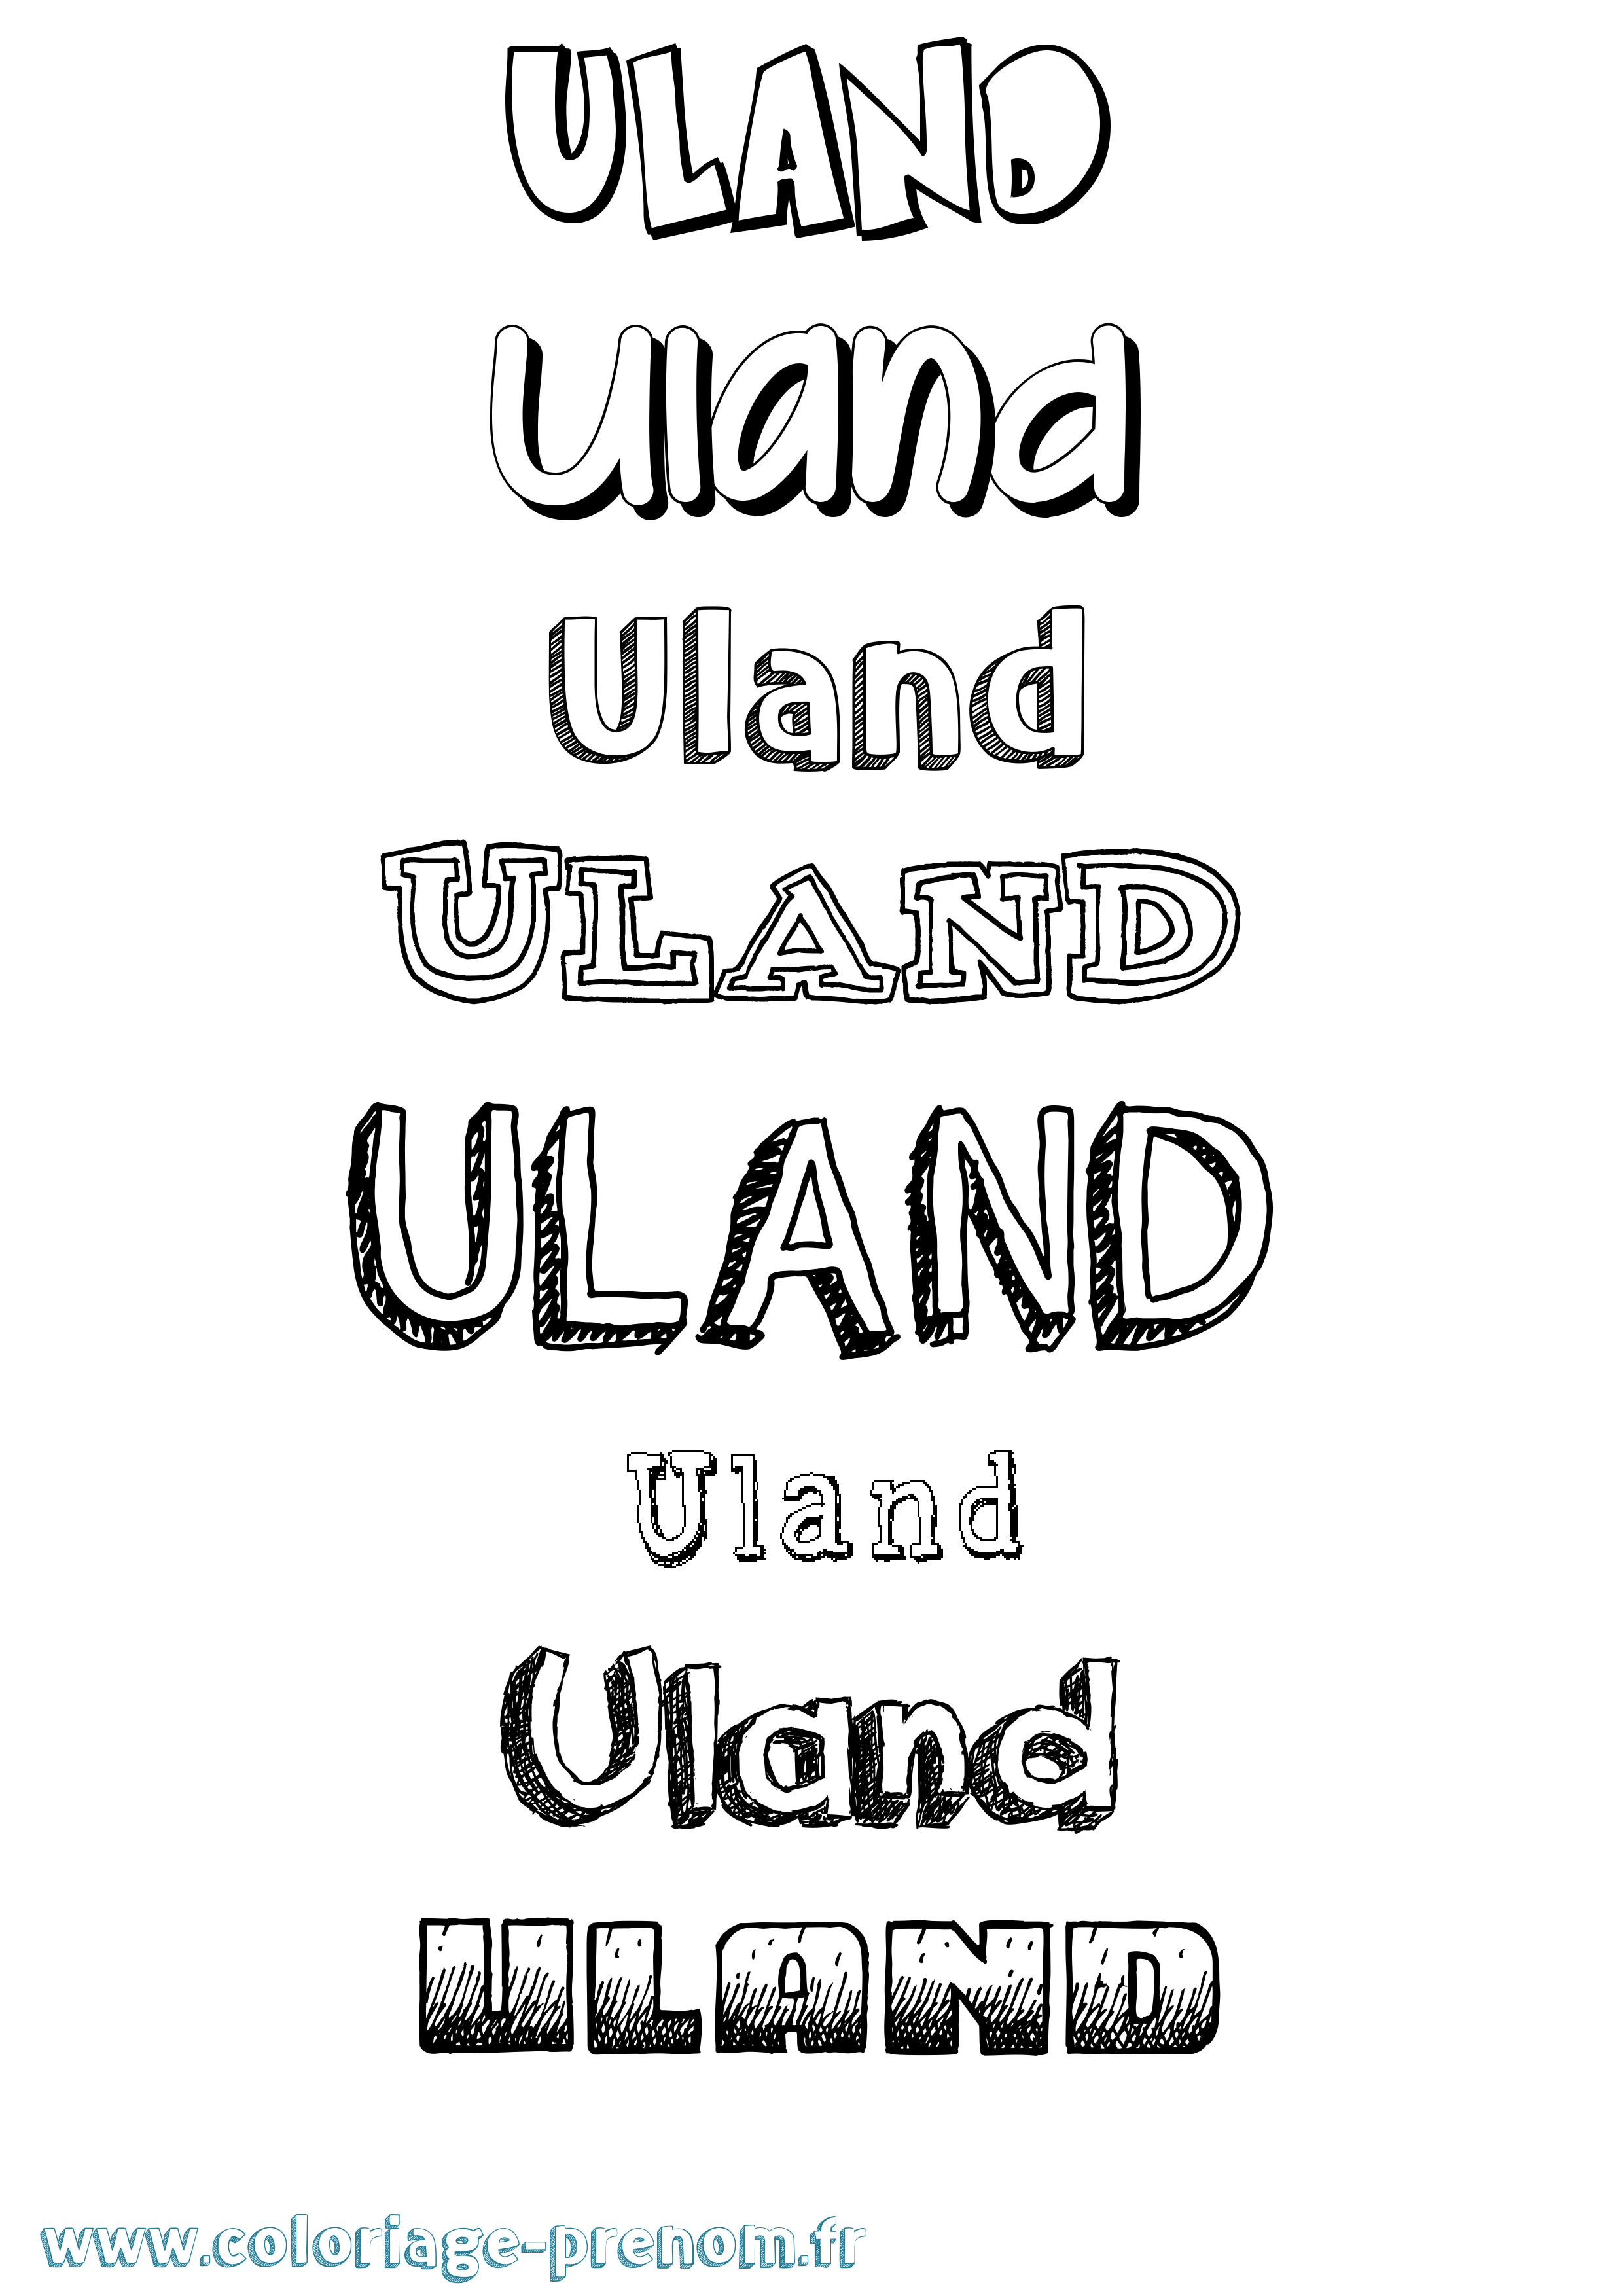 Coloriage prénom Uland Dessiné